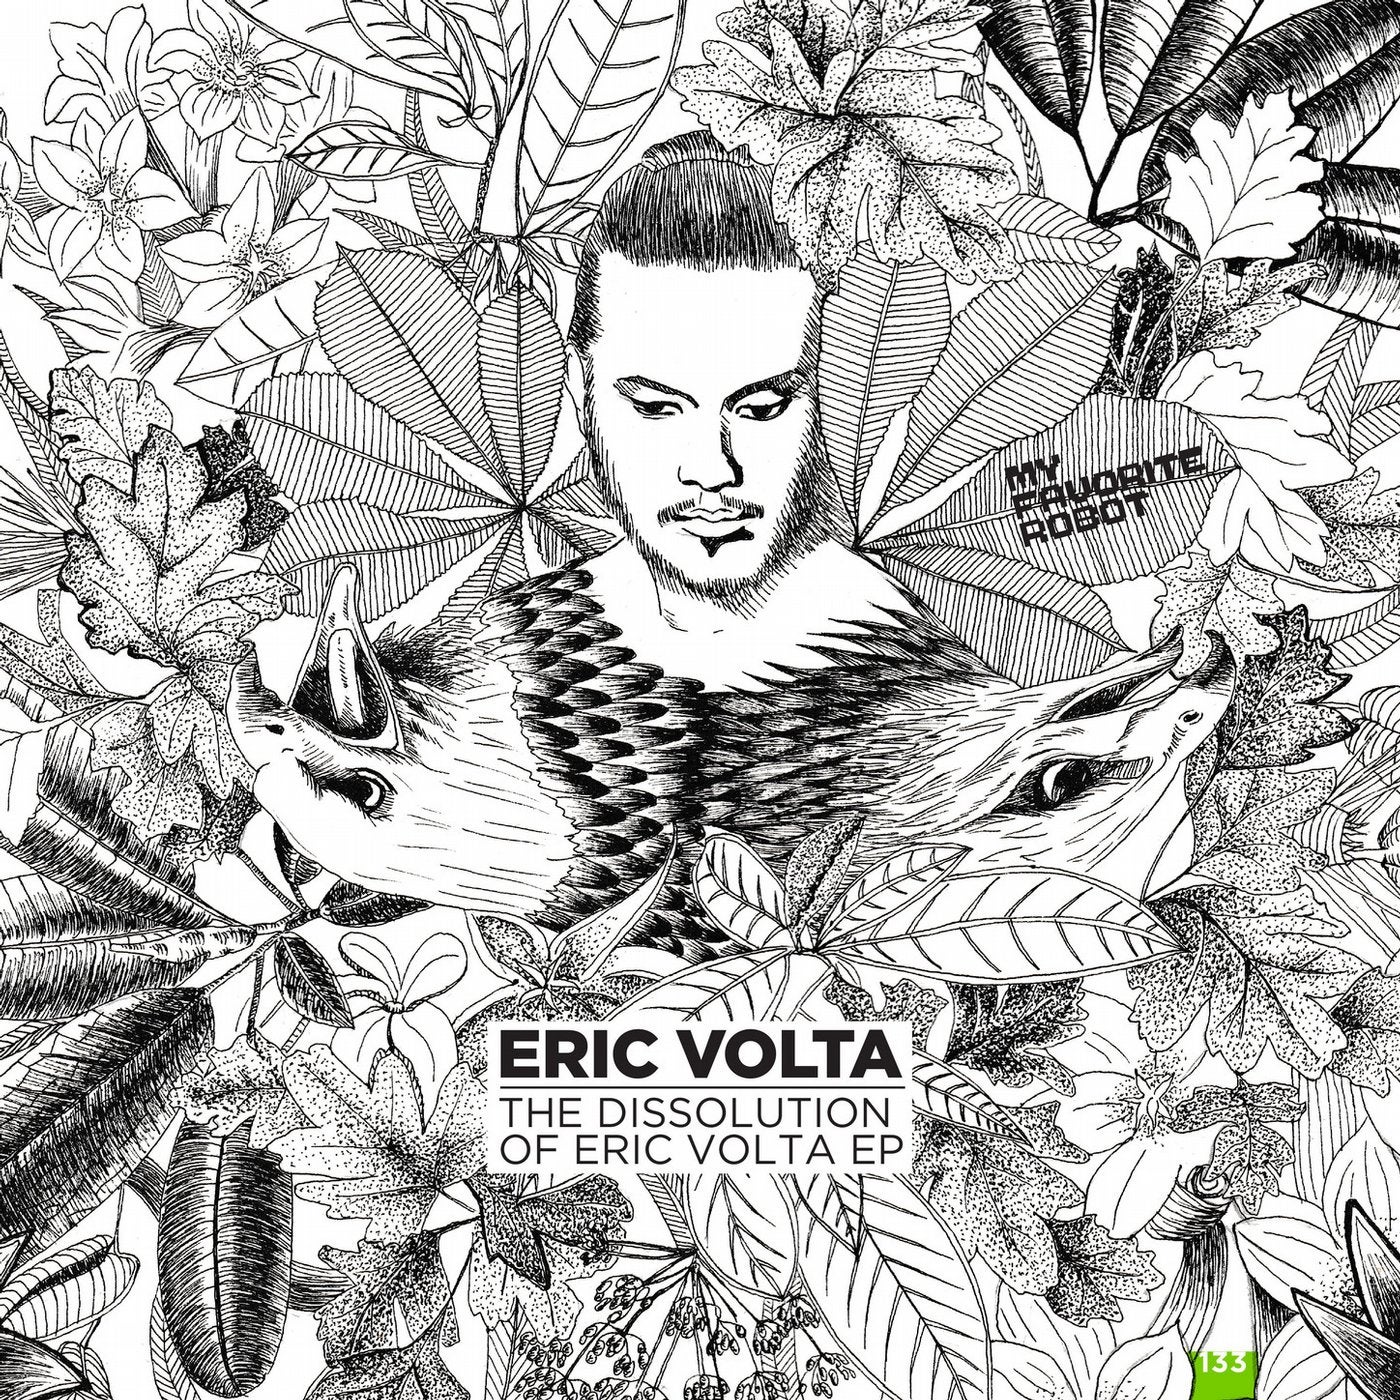 The Dissolution of Eric Volta